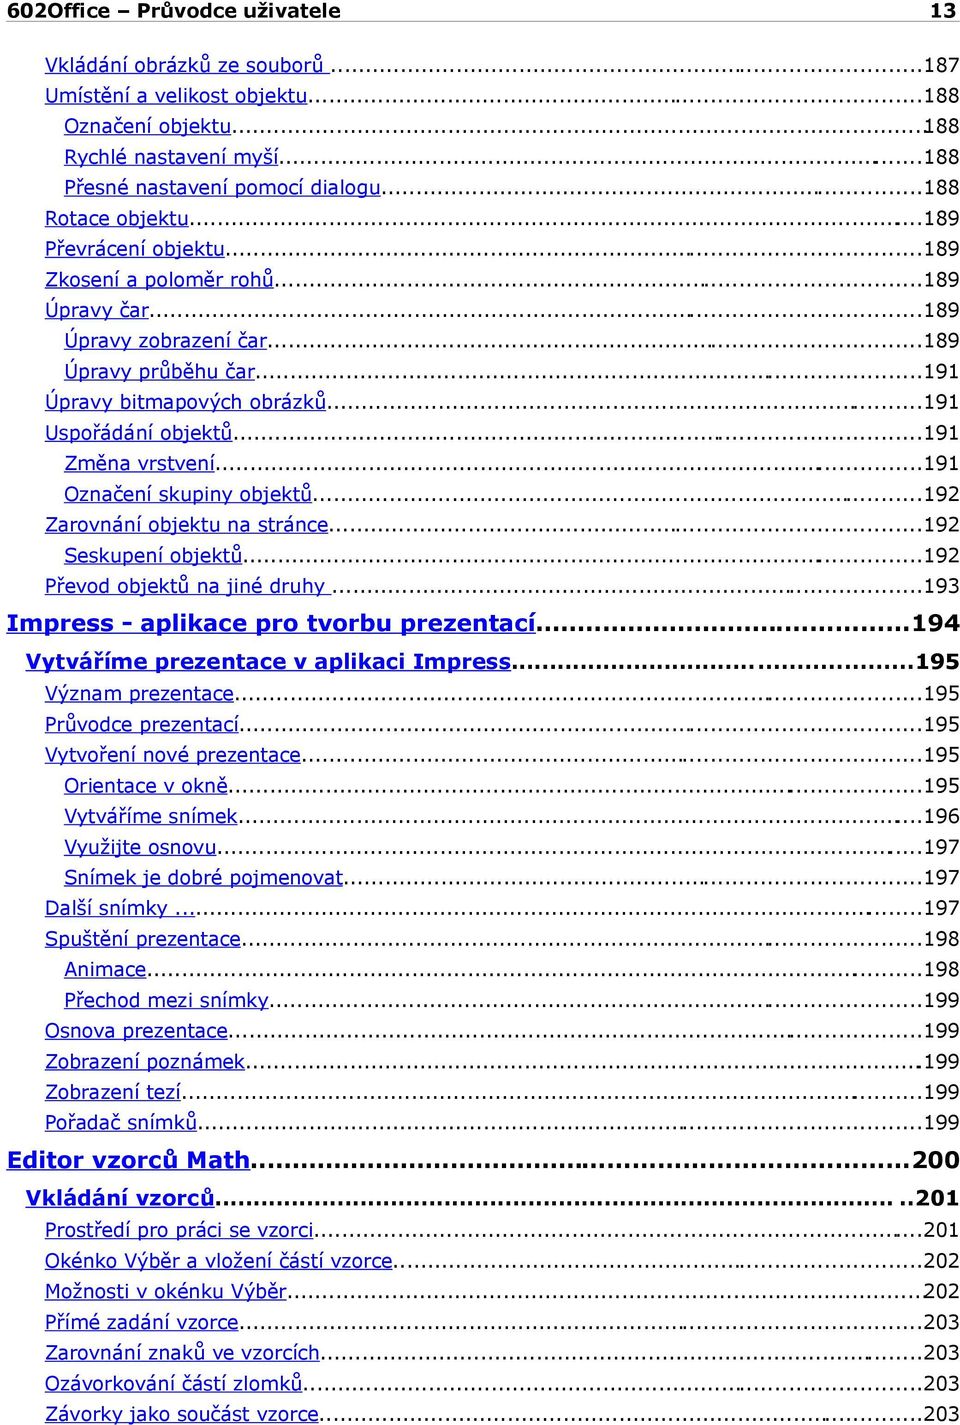 ..191 Označení skupiny objektů...192 Zarovnání objektu na stránce...192 Seskupení objektů...192 Převod objektů na jiné druhy...193 Impress - aplikace pro tvorbu prezentací.